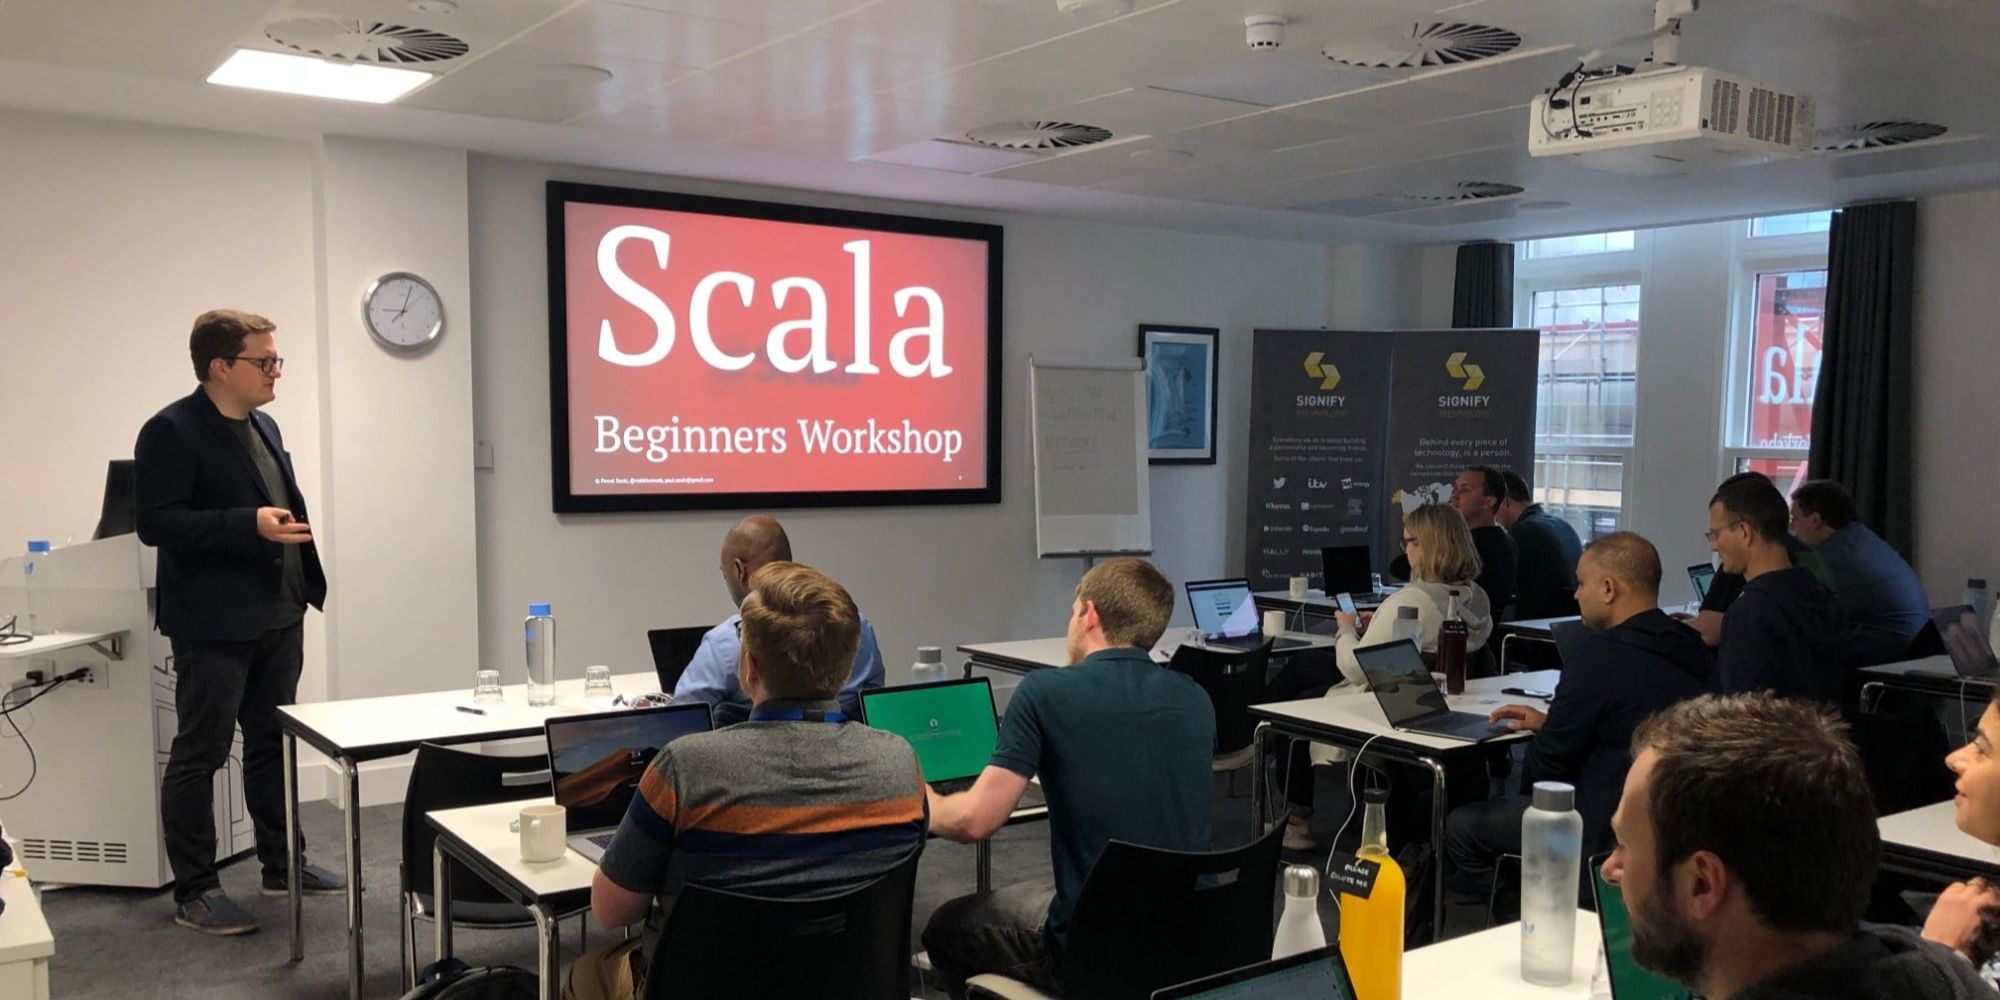 Scala training